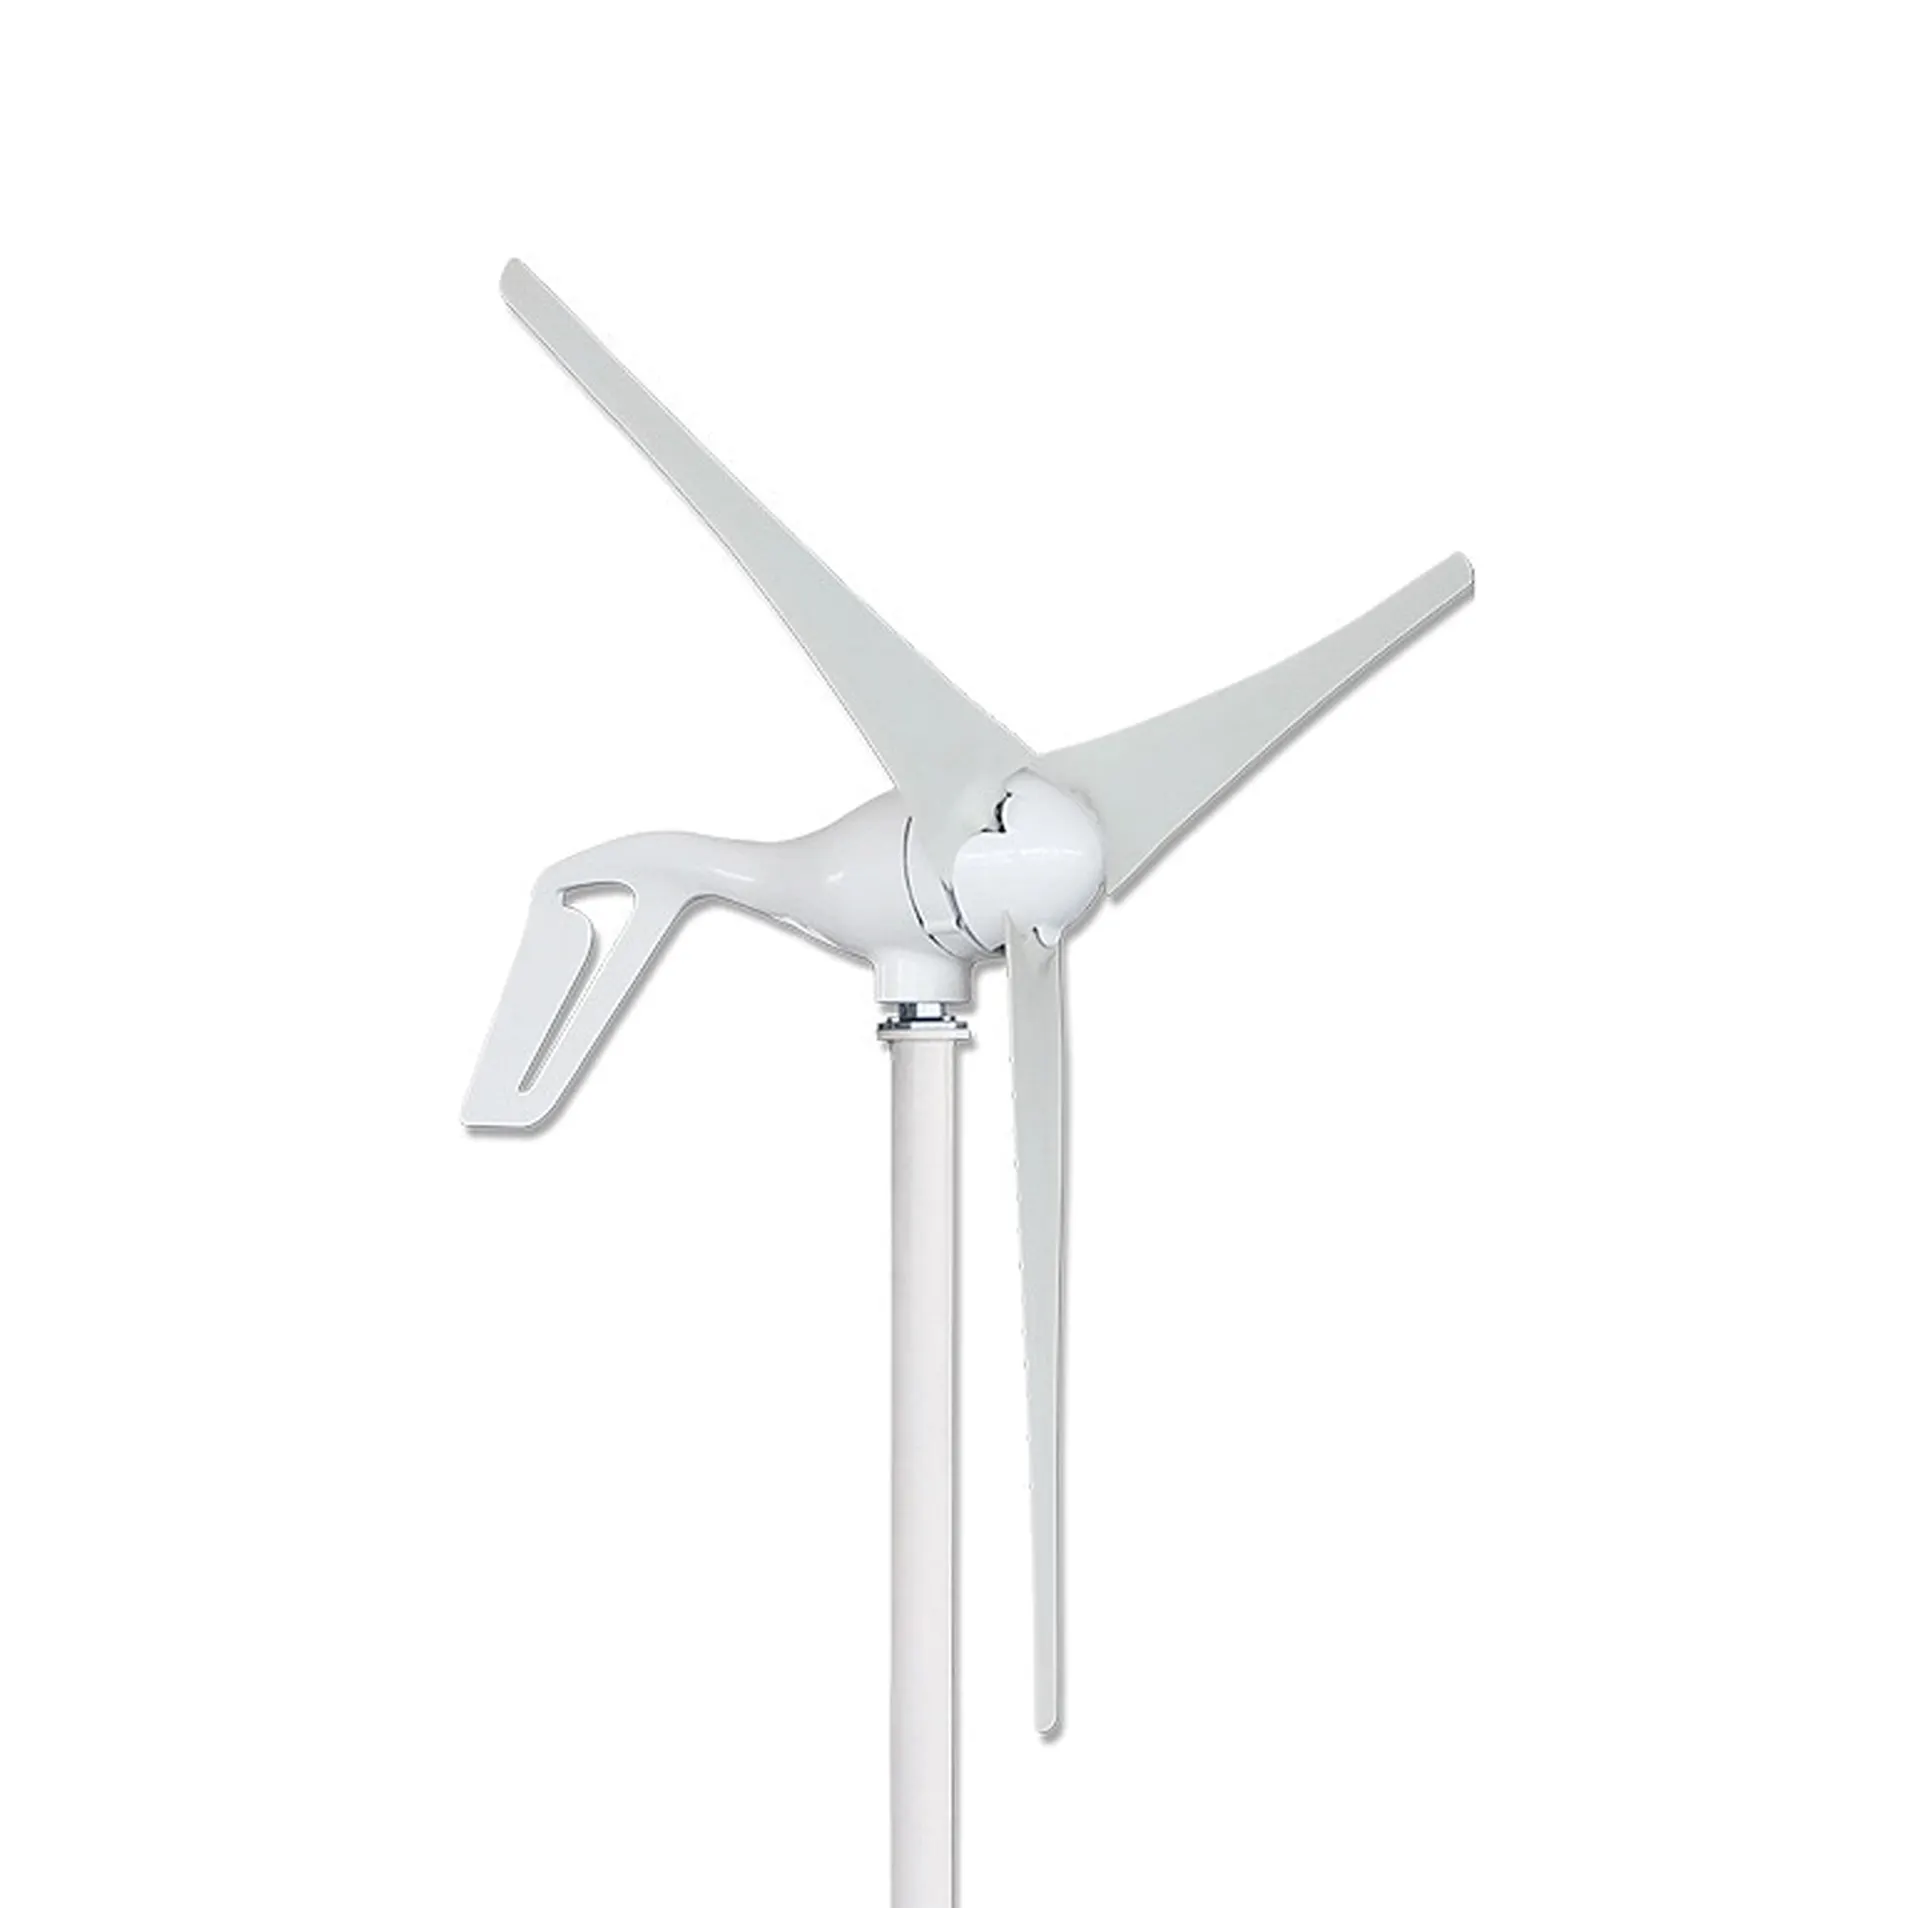 400W風力タービン発電機ソーラーおよび風力充電コントローラーは、12Vバット用に最大400Wのソーラーパネルを追加できます